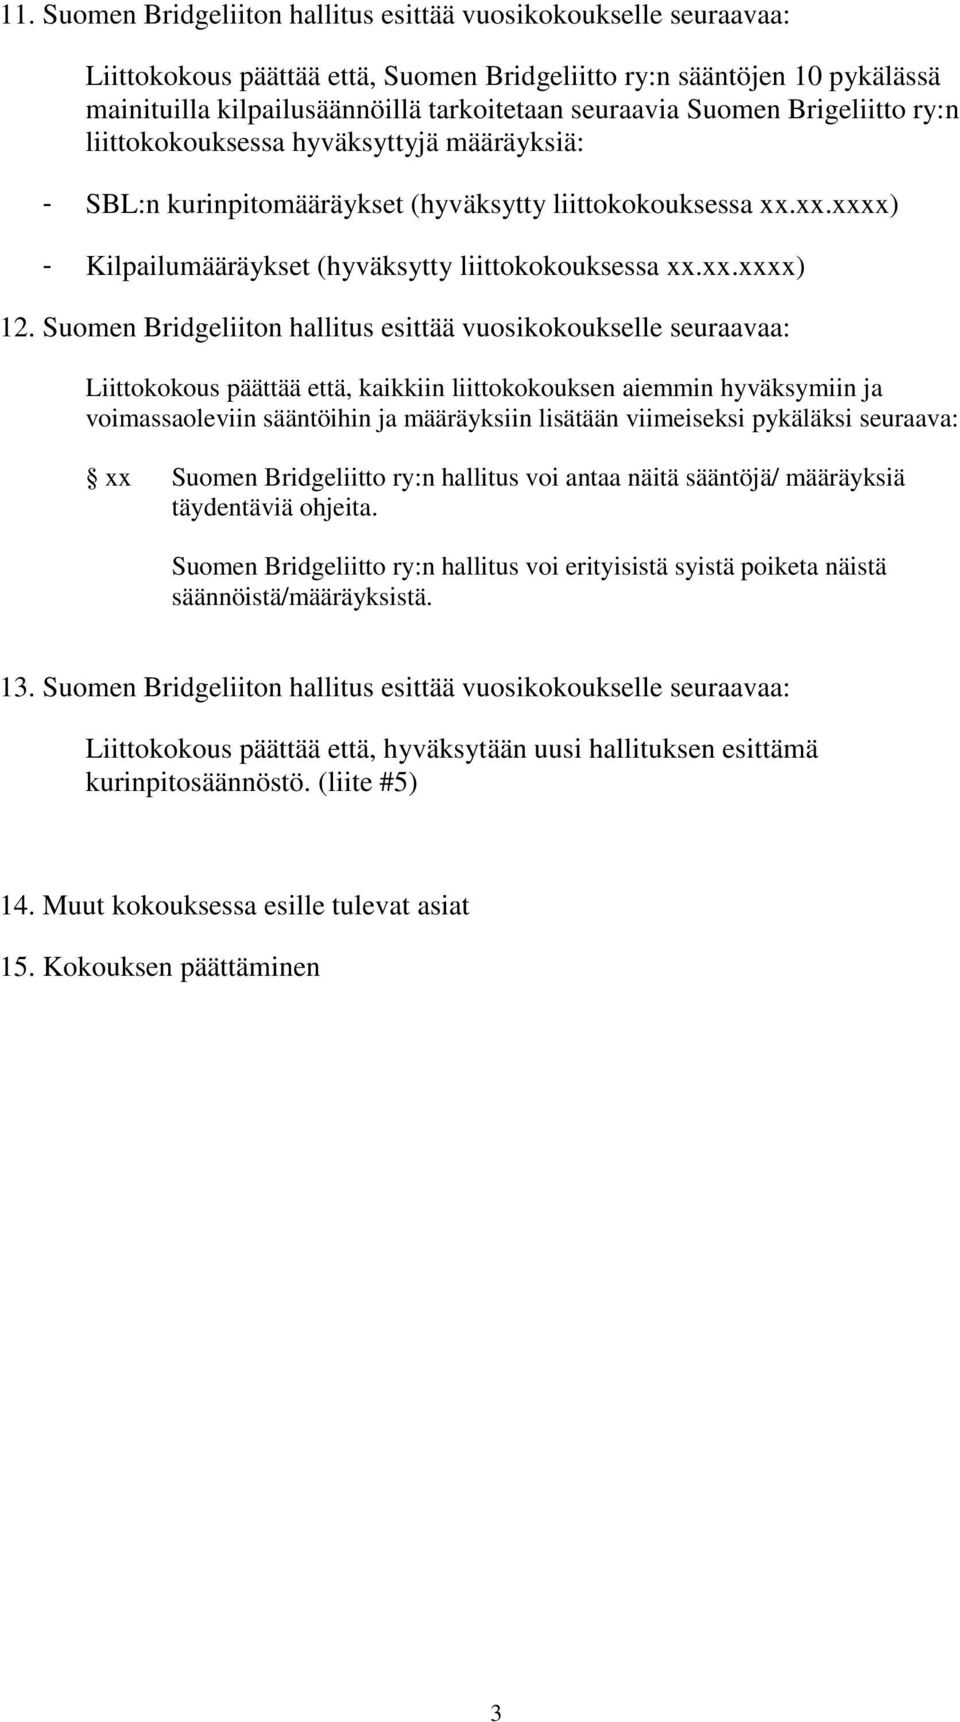 Suomen Bridgeliiton hallitus esittää vuosikokoukselle seuraavaa: Liittokokous päättää että, kaikkiin liittokokouksen aiemmin hyväksymiin ja voimassaoleviin sääntöihin ja määräyksiin lisätään